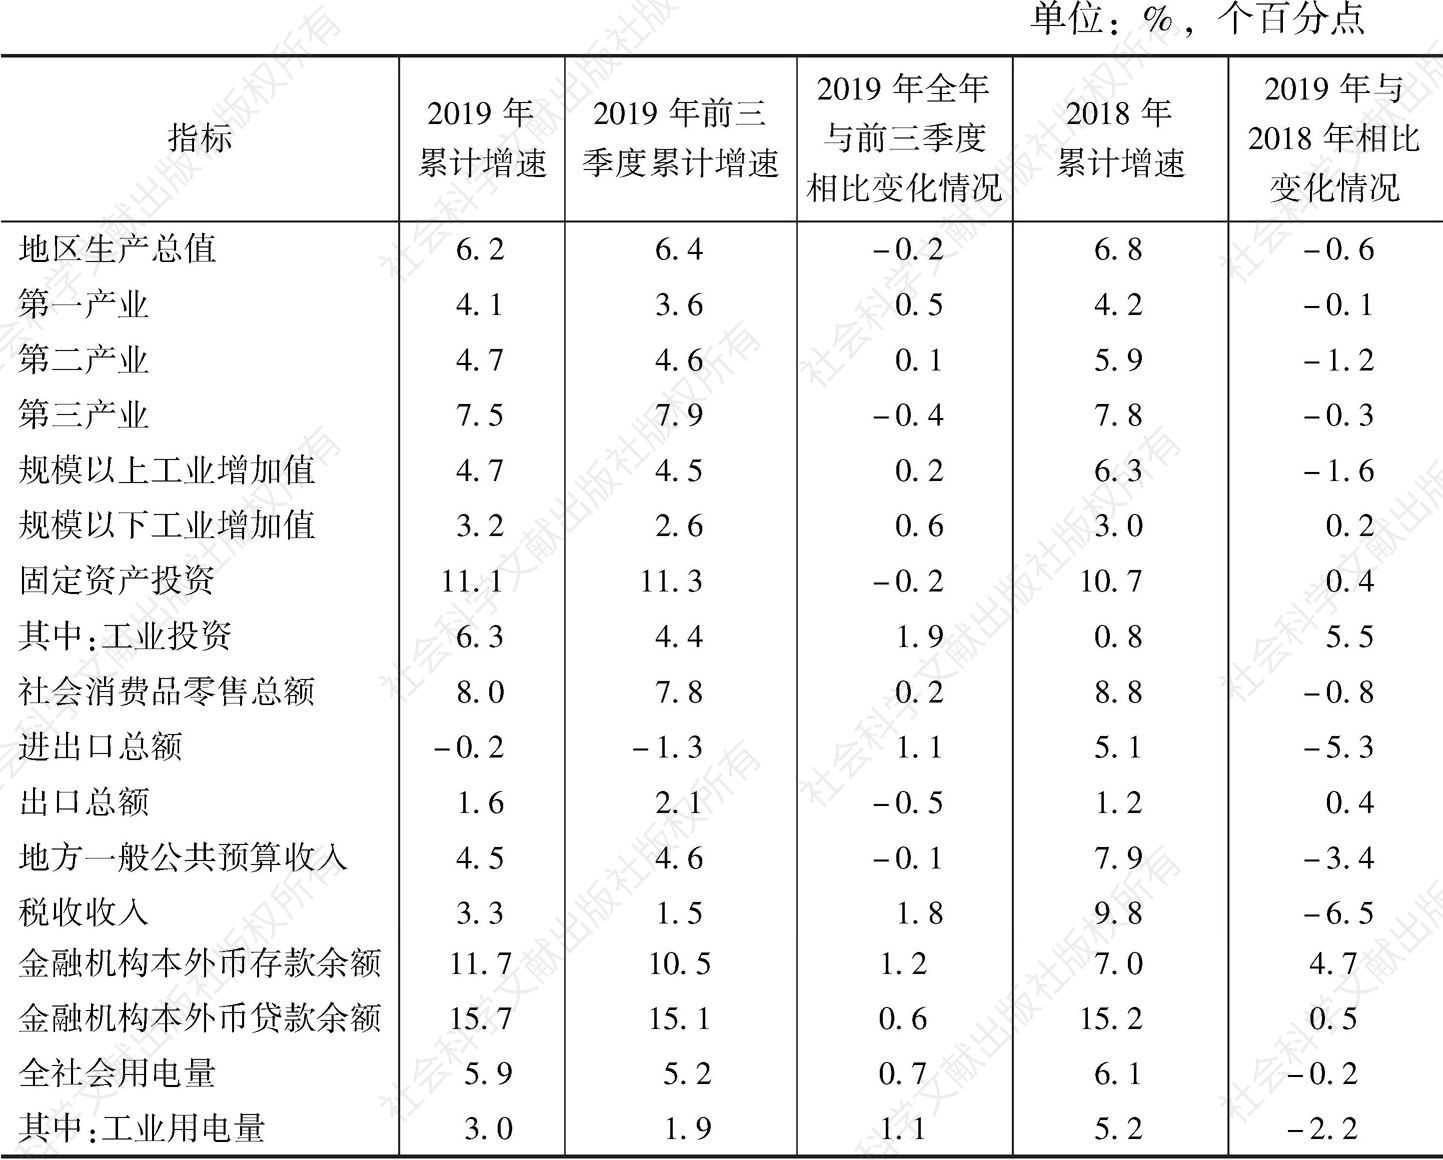 表1 2019年广东主要经济指标增速情况